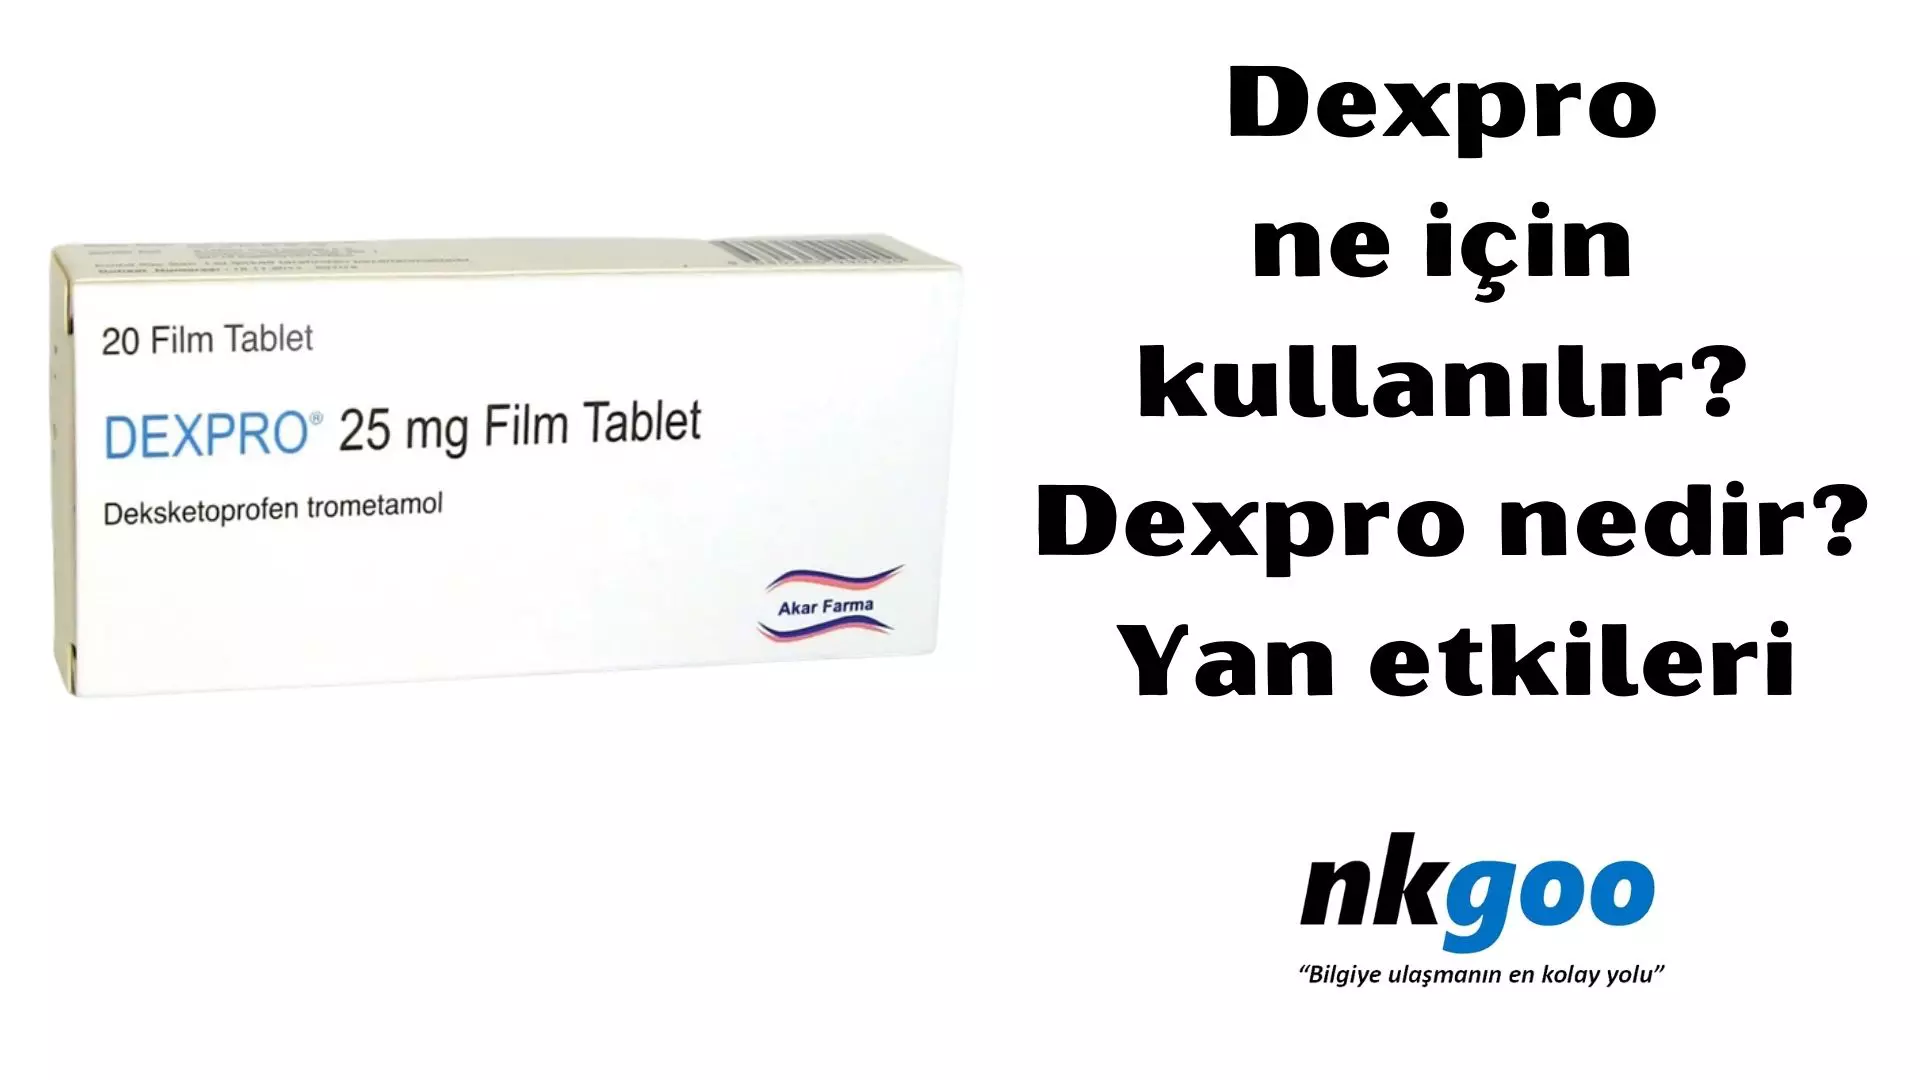 Dexpro ne için kullanılır? Dexpro nedir?